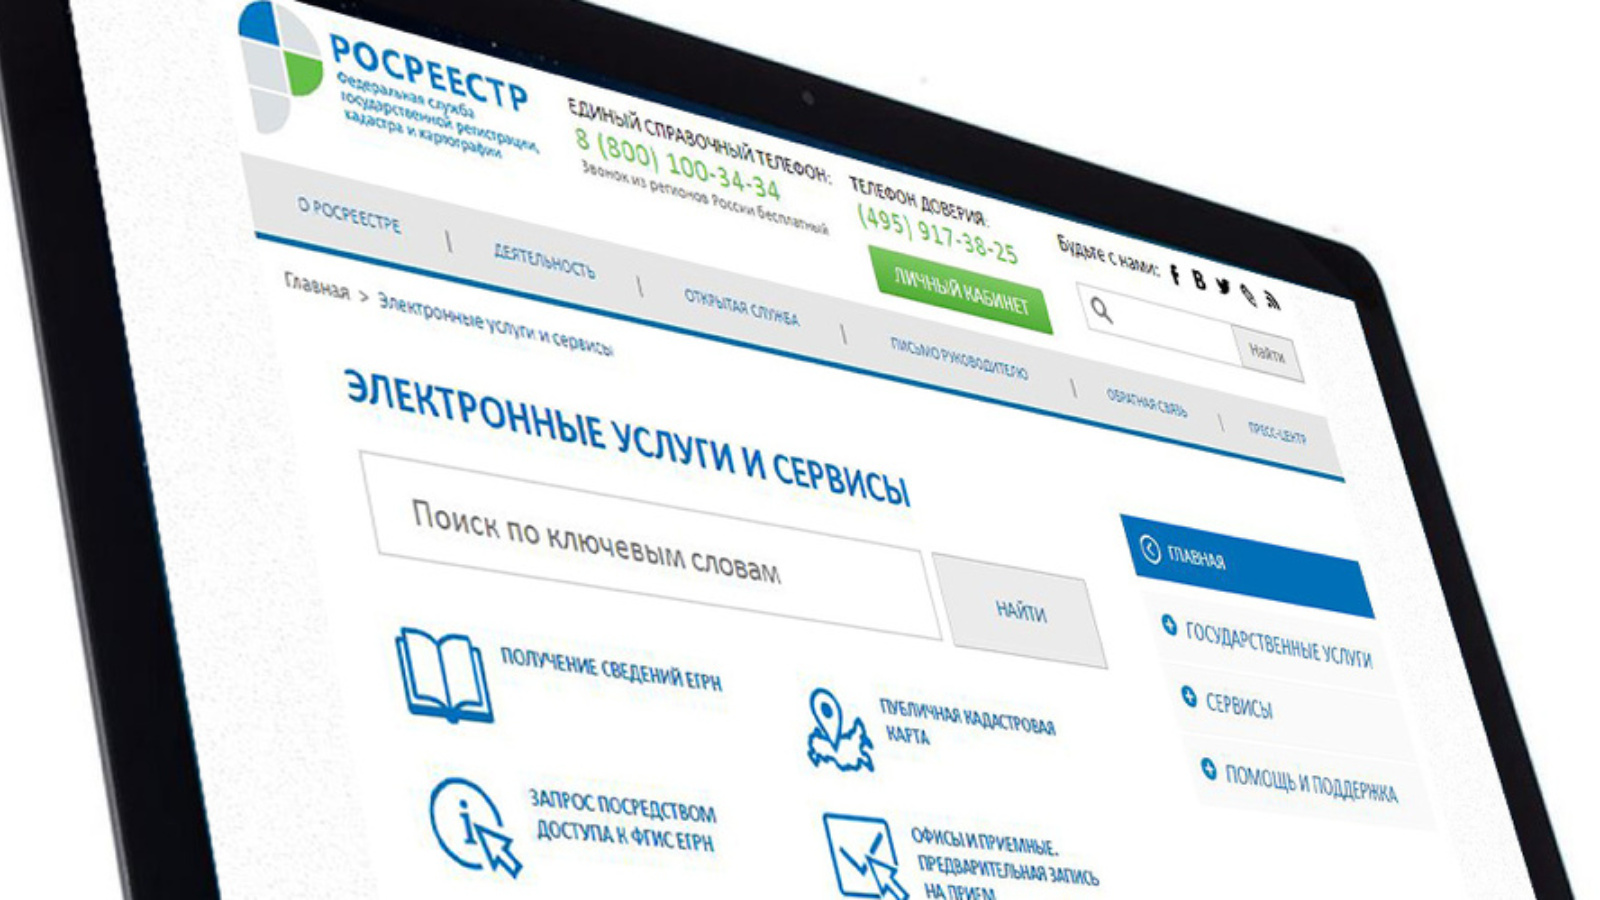 Https rosreestr ru portal p. Личный кабинет. Электронные услуги. Электронные услуги и сервисы. Личный кабинет правообладателя.